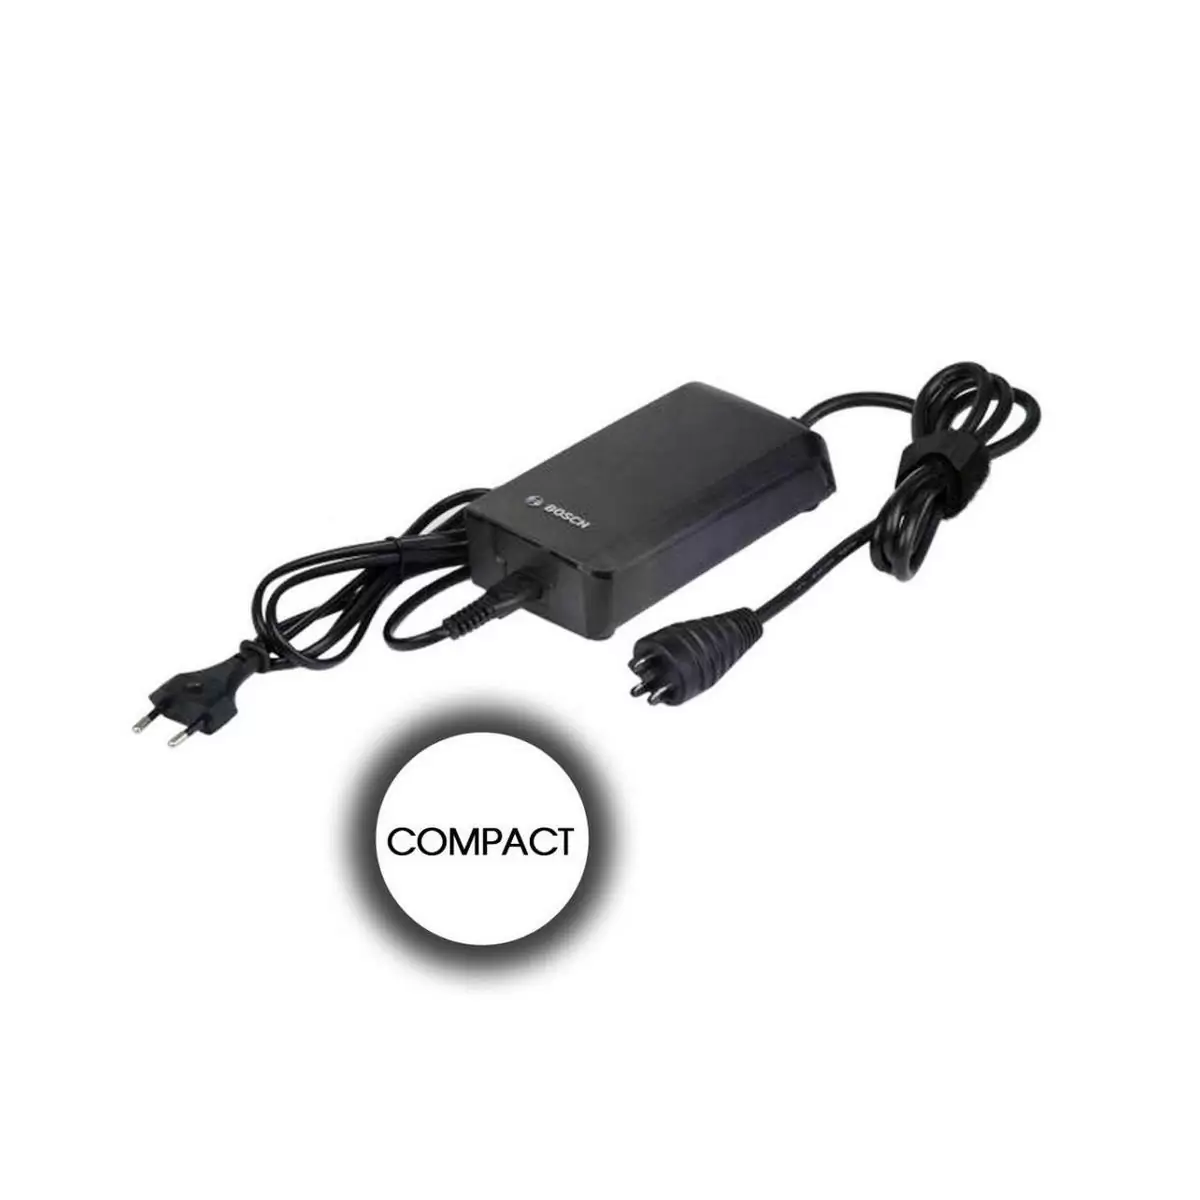 chargeur de batterie compact 2a performance active prise de câble européenne - image